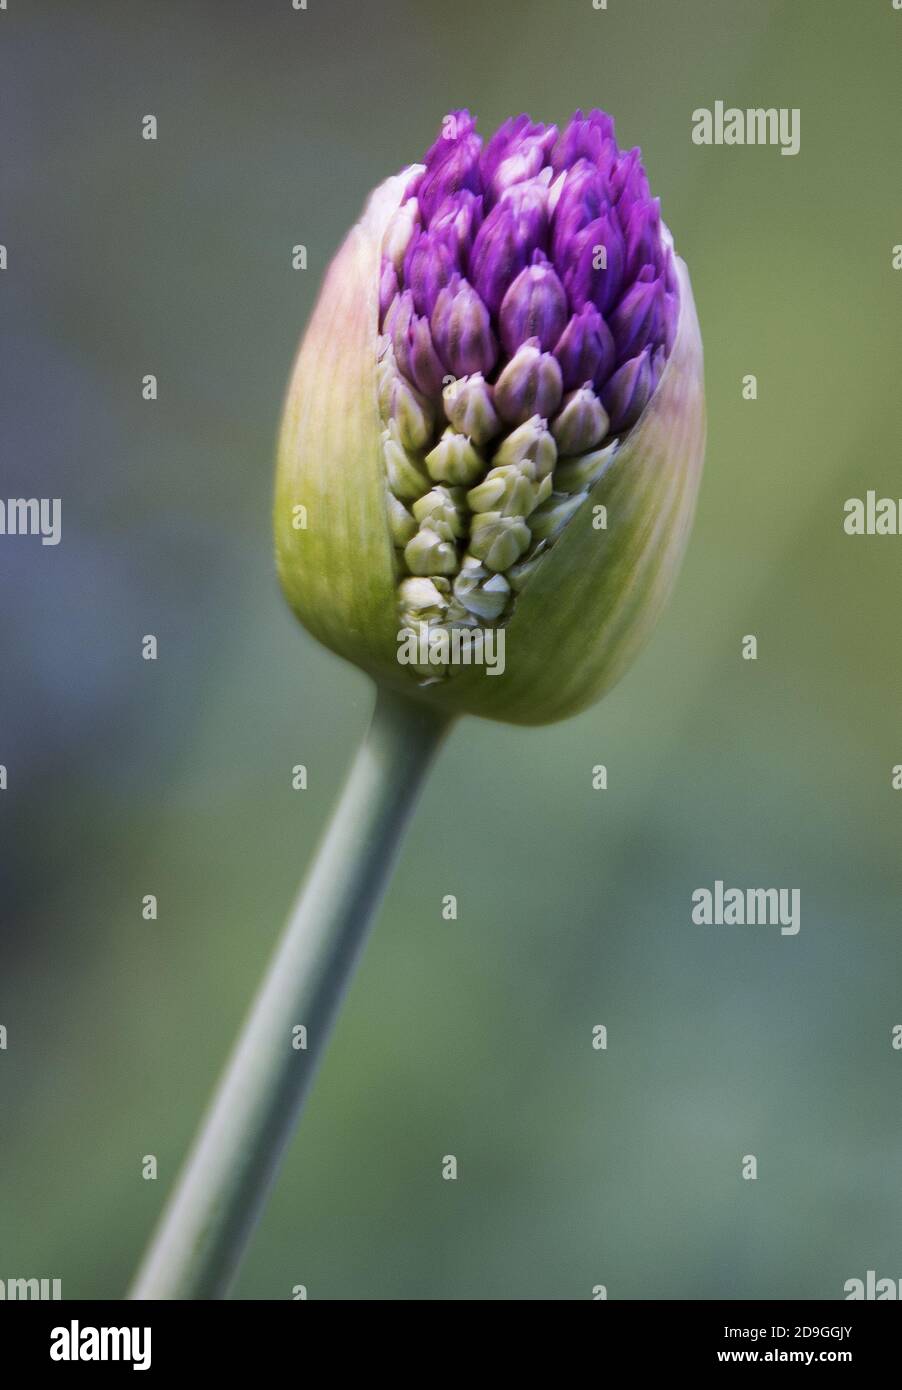 Allium in bud Stock Photo